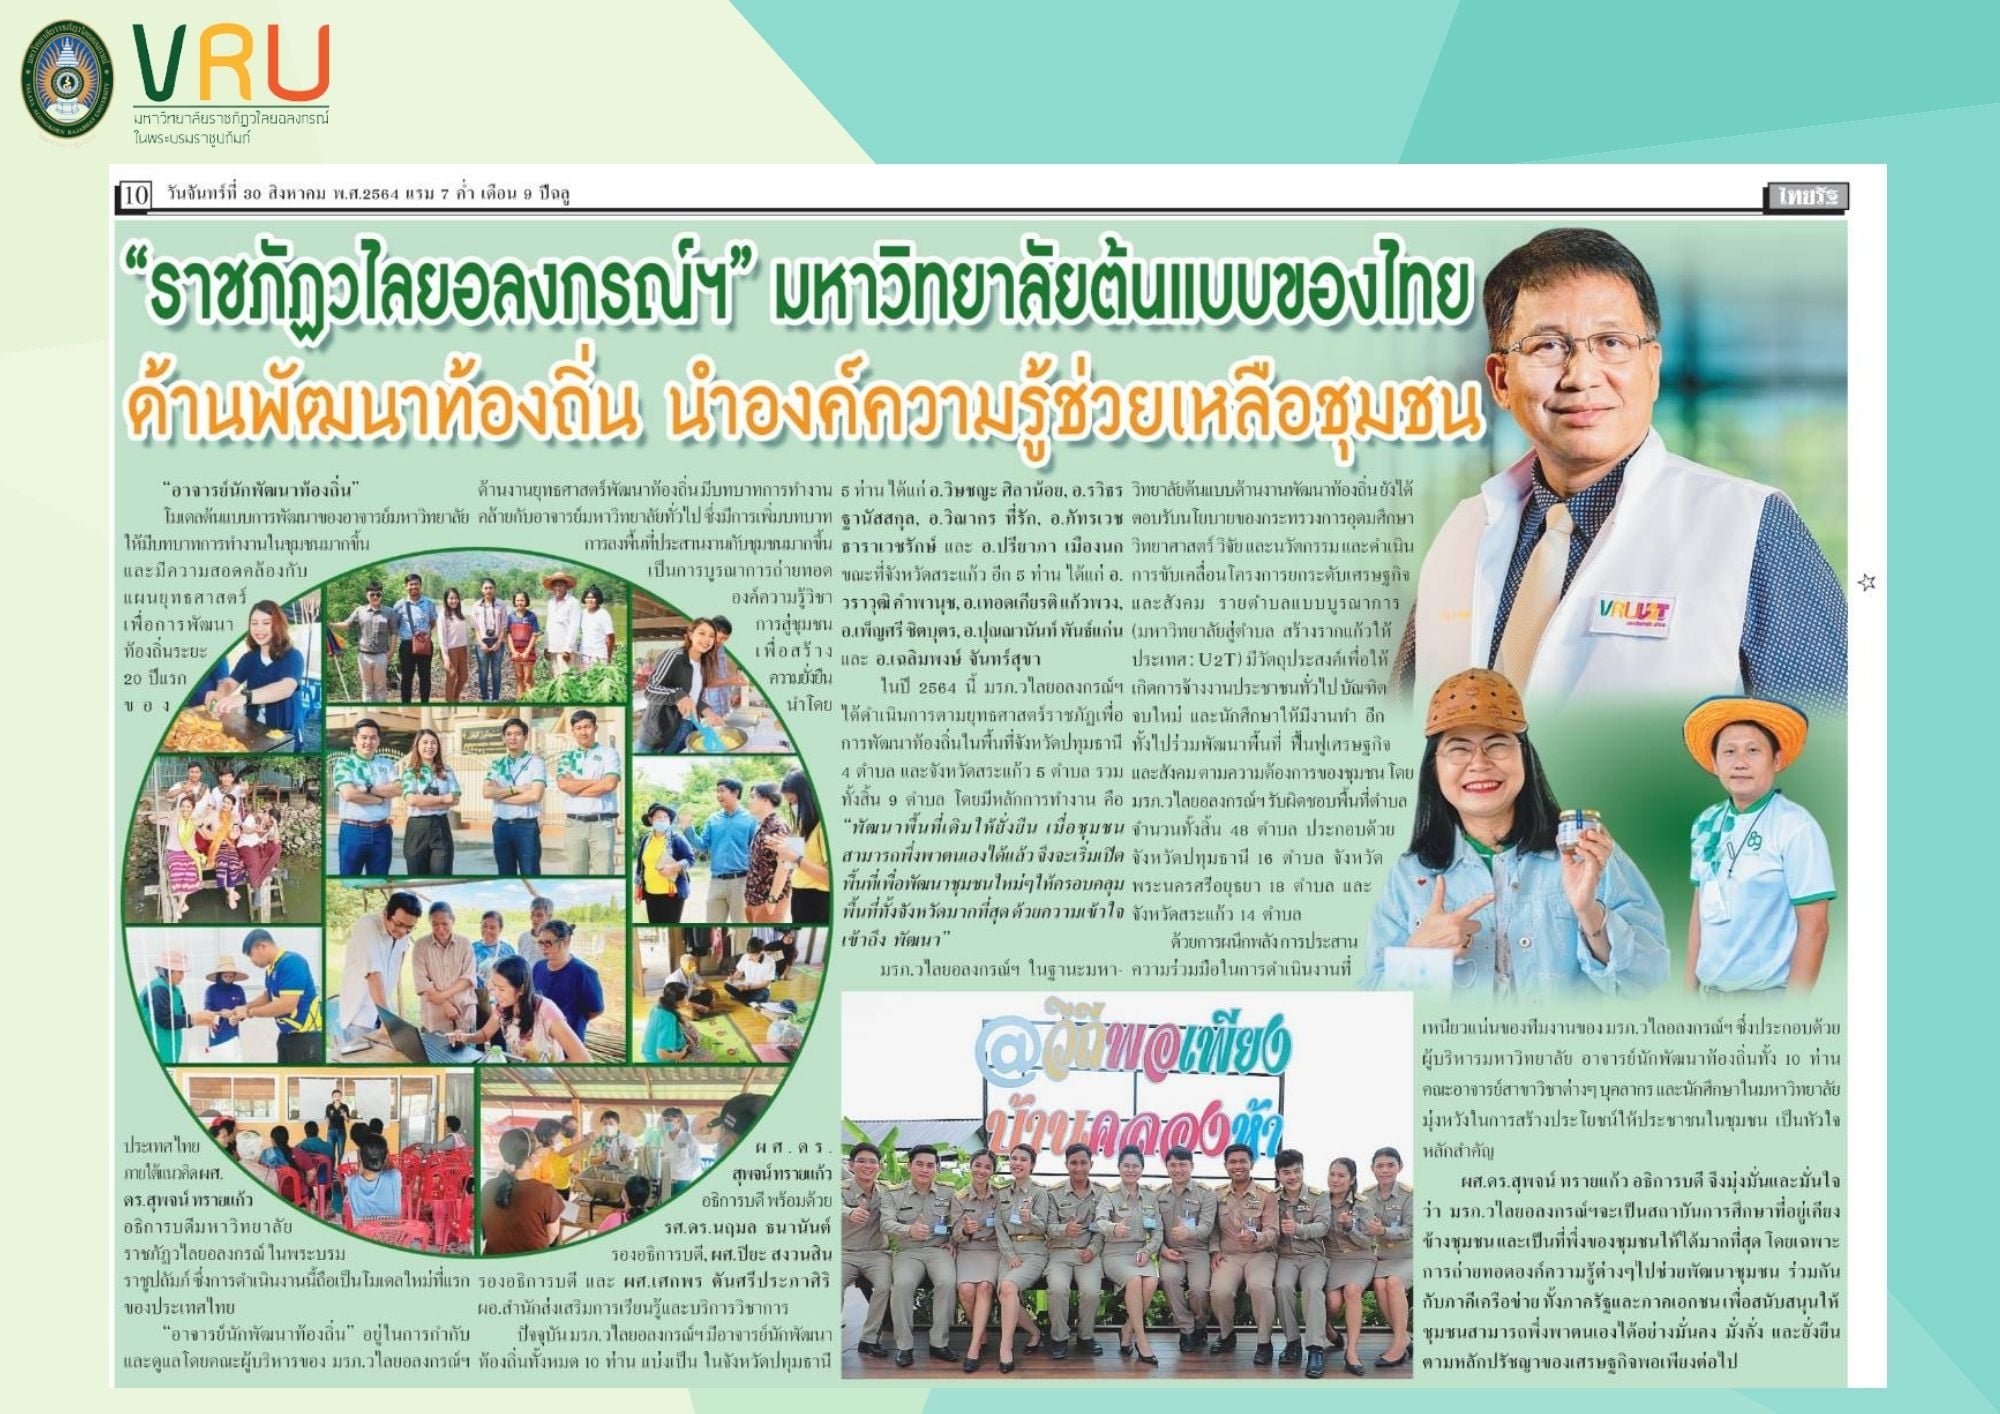 30 สิงหาคม 2564 มหาวิทยาลัยต้นแบบของไทย ด้านพัฒนาท้องถิ่นนำองค์ความรู้ช่วยเหลือชุมชน 